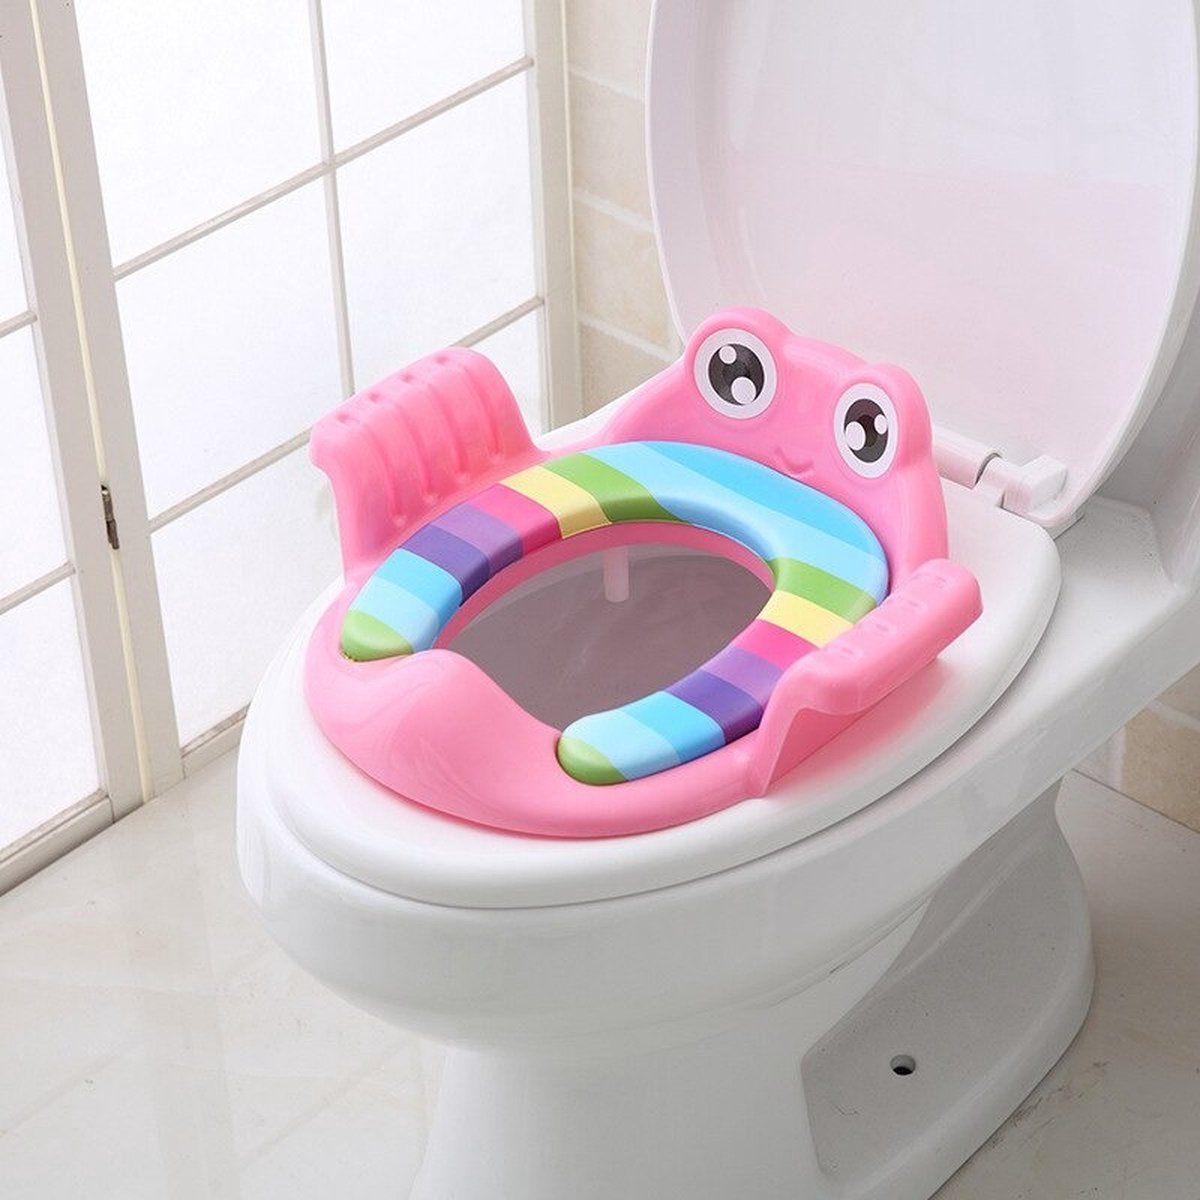 Roze - Wc Bril Verkleiner Voor Kinderen - Squatty Potty - WC Krukje - WC Verkleiner